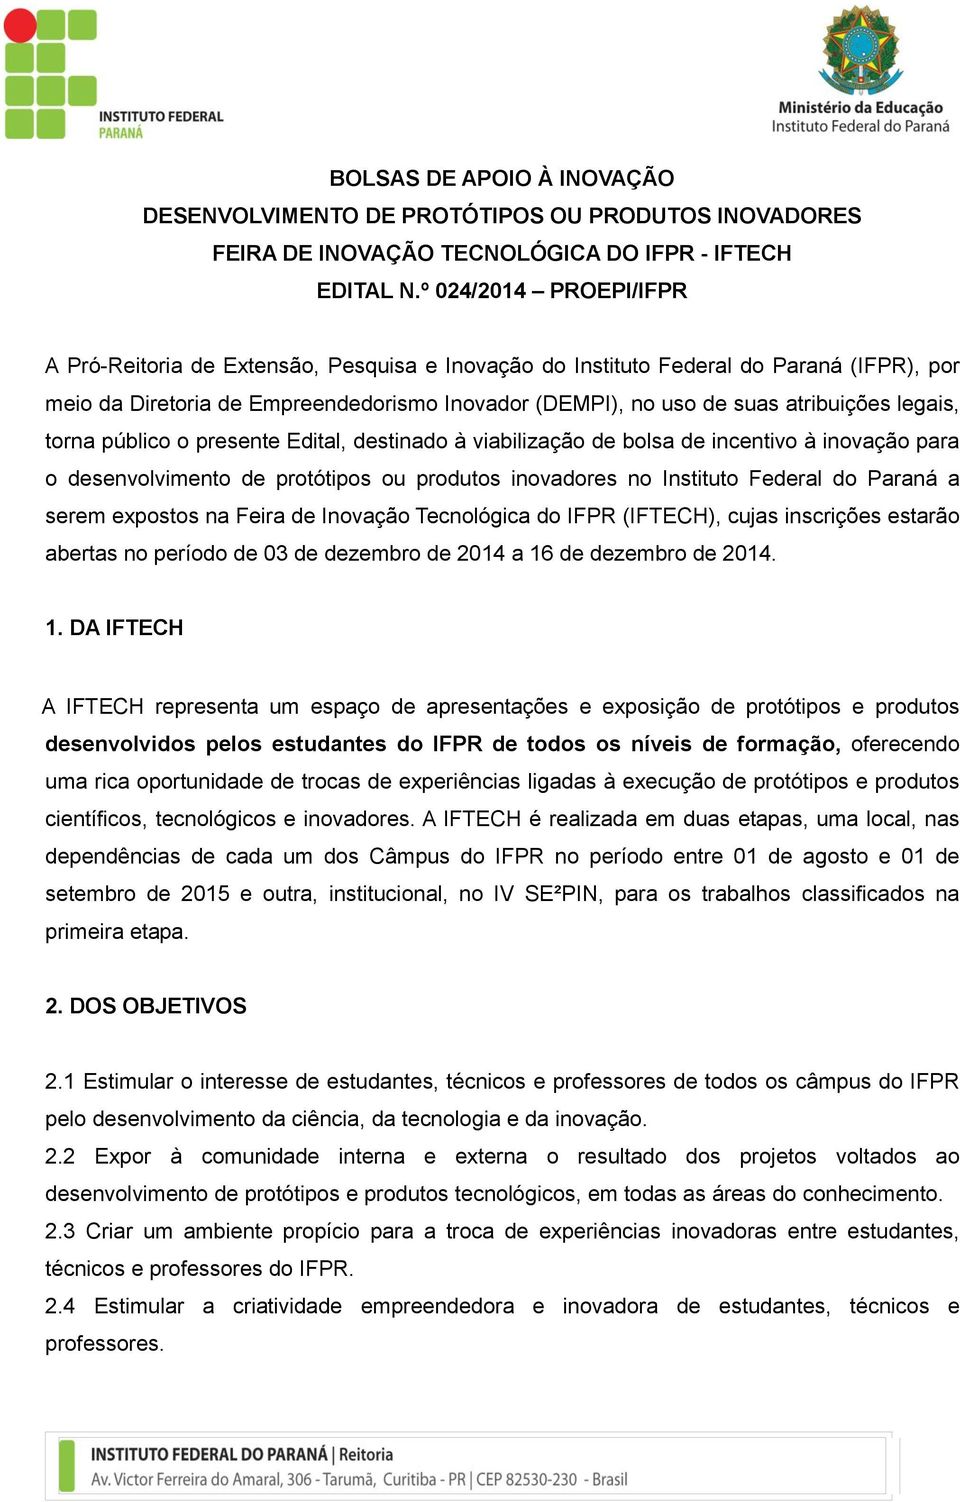 legais, torna público o presente Edital, destinado à viabilização de bolsa de incentivo à inovação para o desenvolvimento de protótipos ou produtos inovadores no Instituto Federal do Paraná a serem